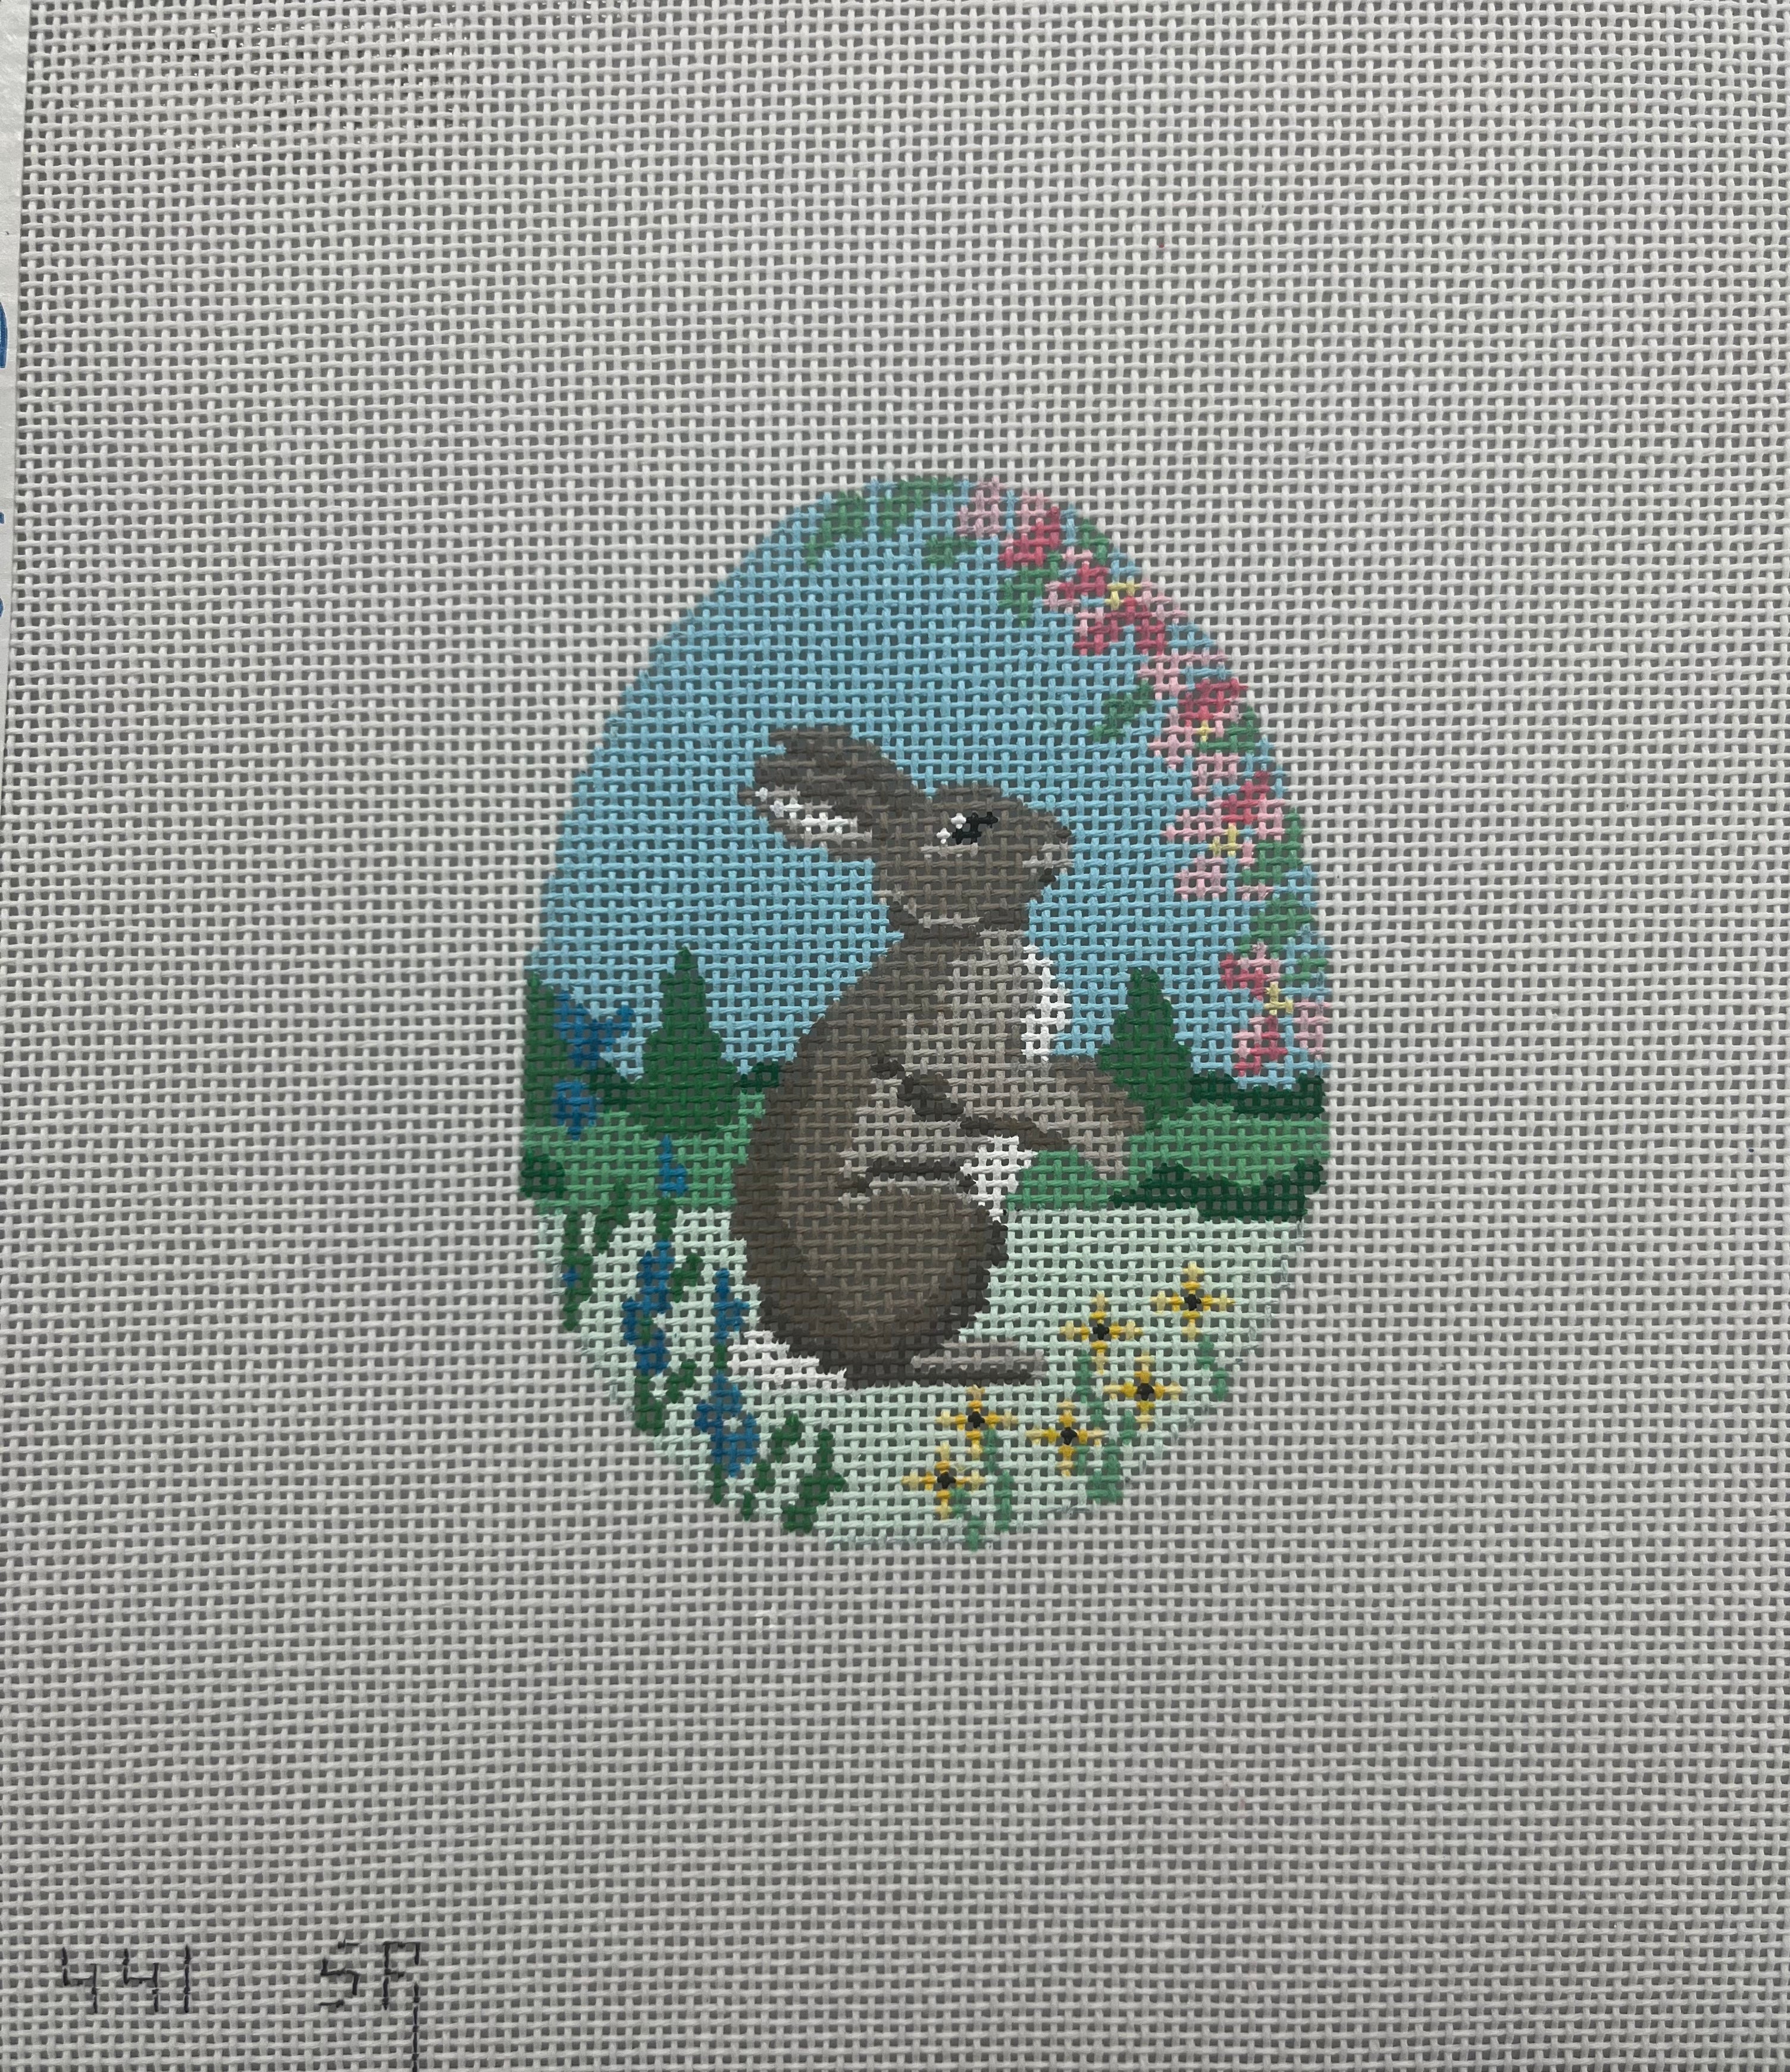 441 - Rabbit In Flowers 4" Egg